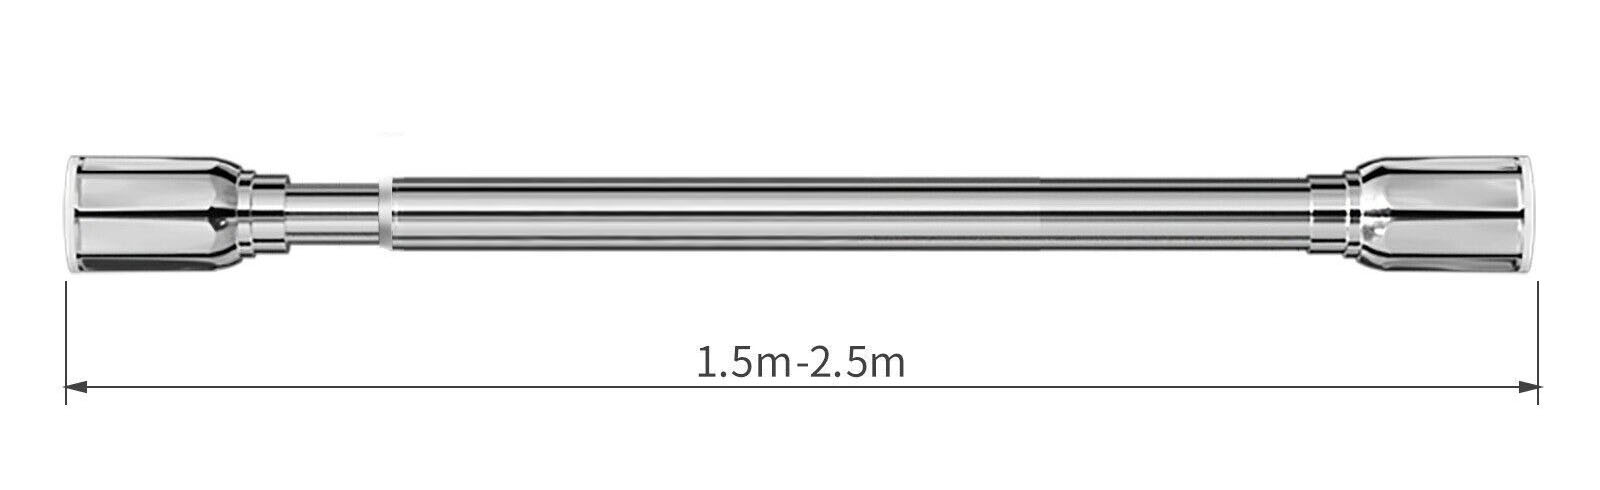 Rozpěrná teleskopická tyč pro závěs 70-250 cm Barva: Chrom, Rozměr: 150-250 cm